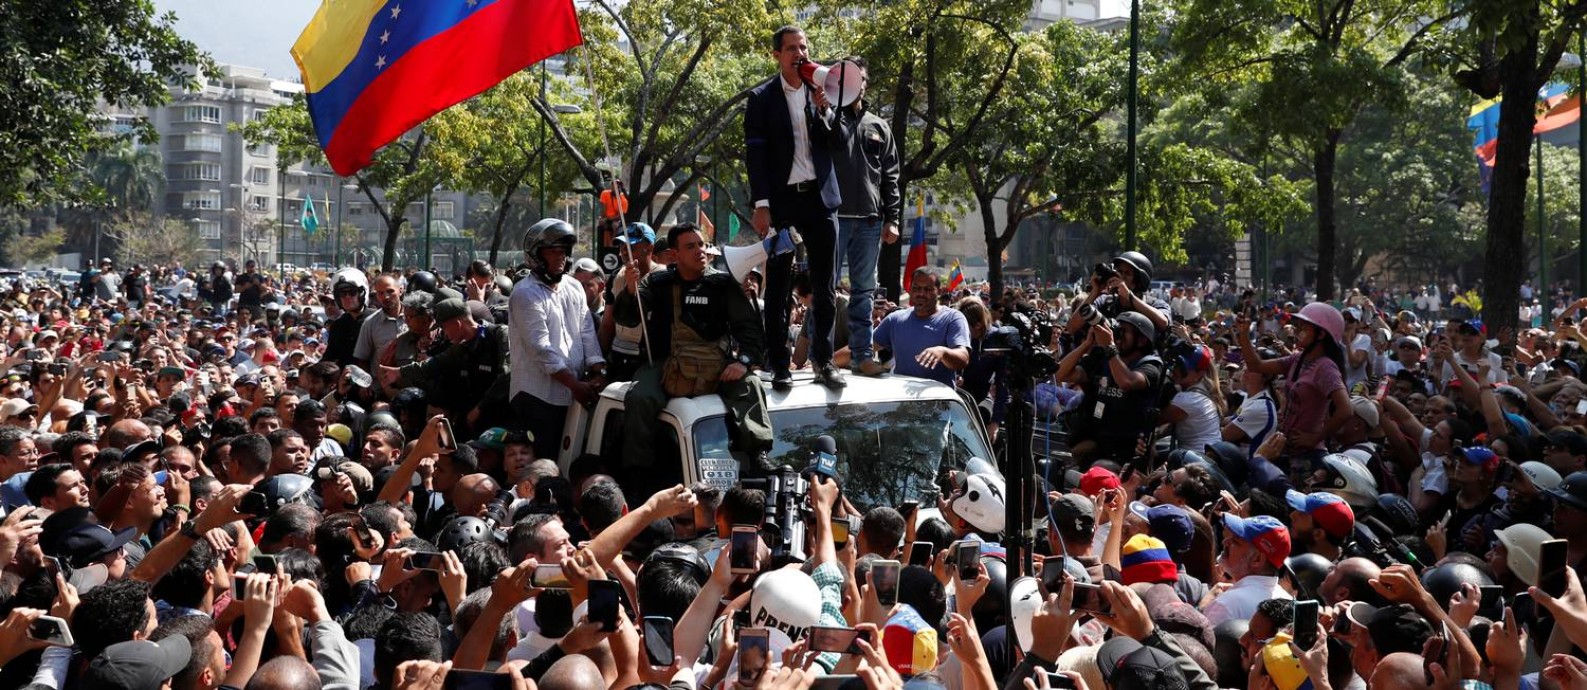 Opositor Juan Guaidó fala a apoiadores em Caracas após anunciar operação com apoio de militares contra o governo de Nicolás Maduro Foto: CARLOS GARCIA RAWLINS / REUTERS